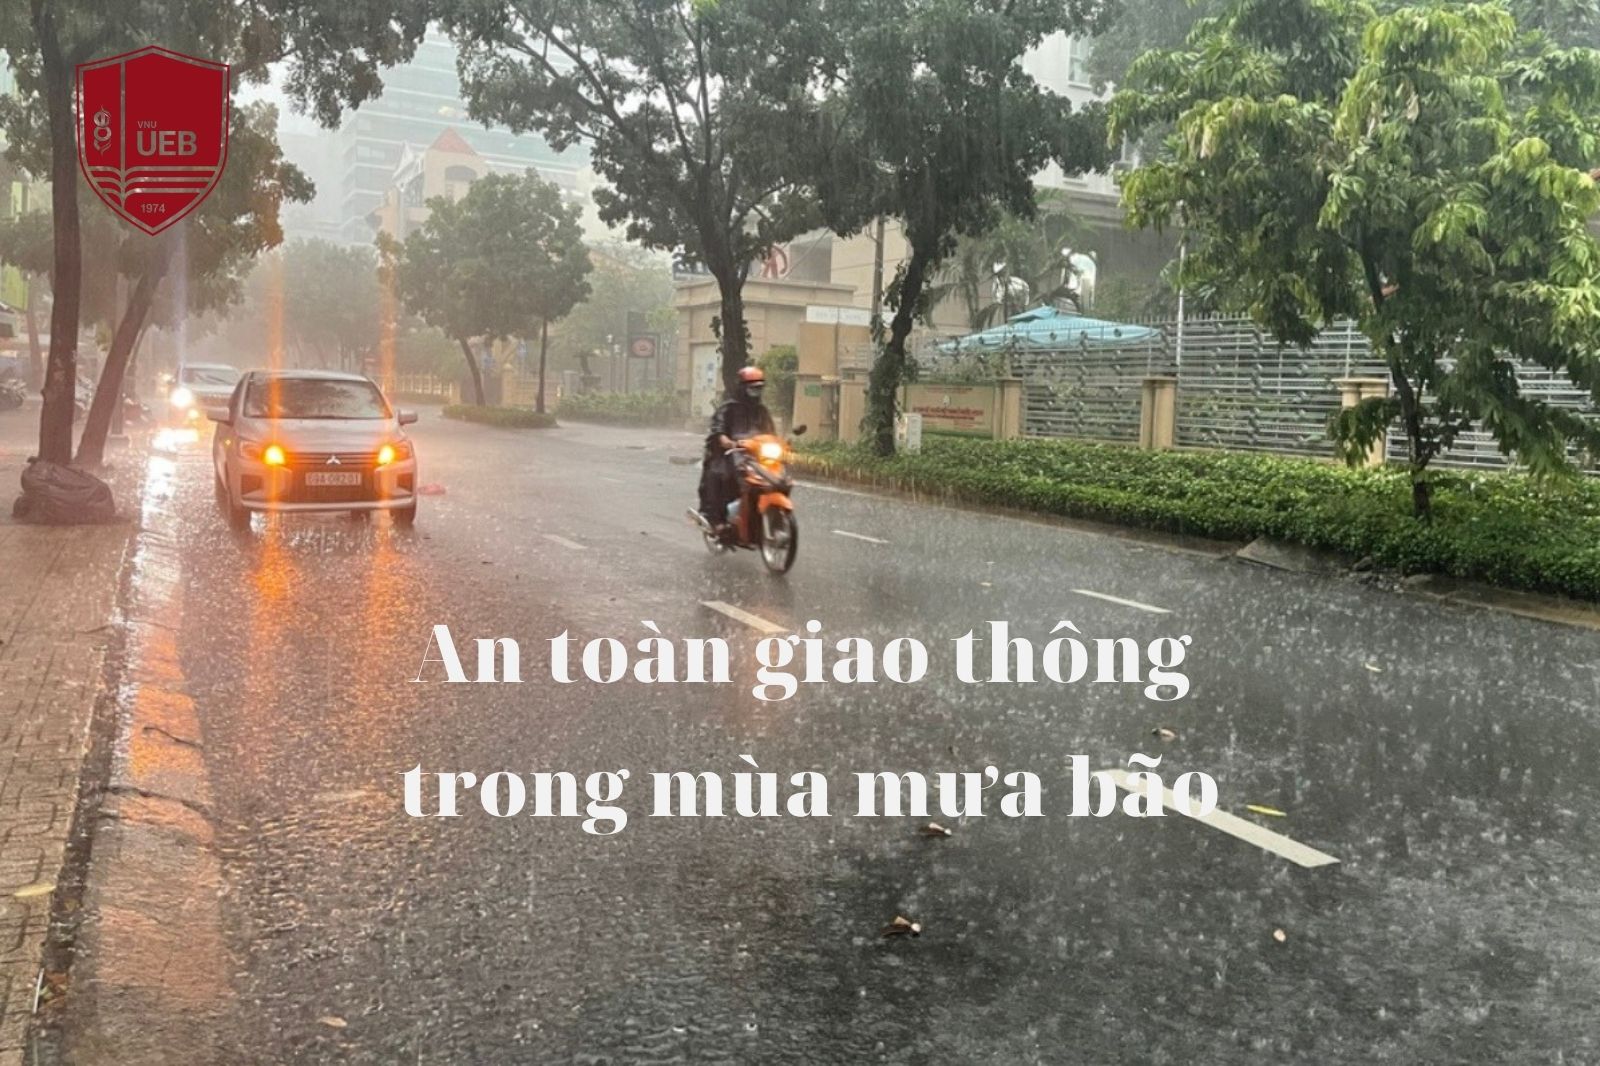 An toàn giao thông trong mùa mưa bão